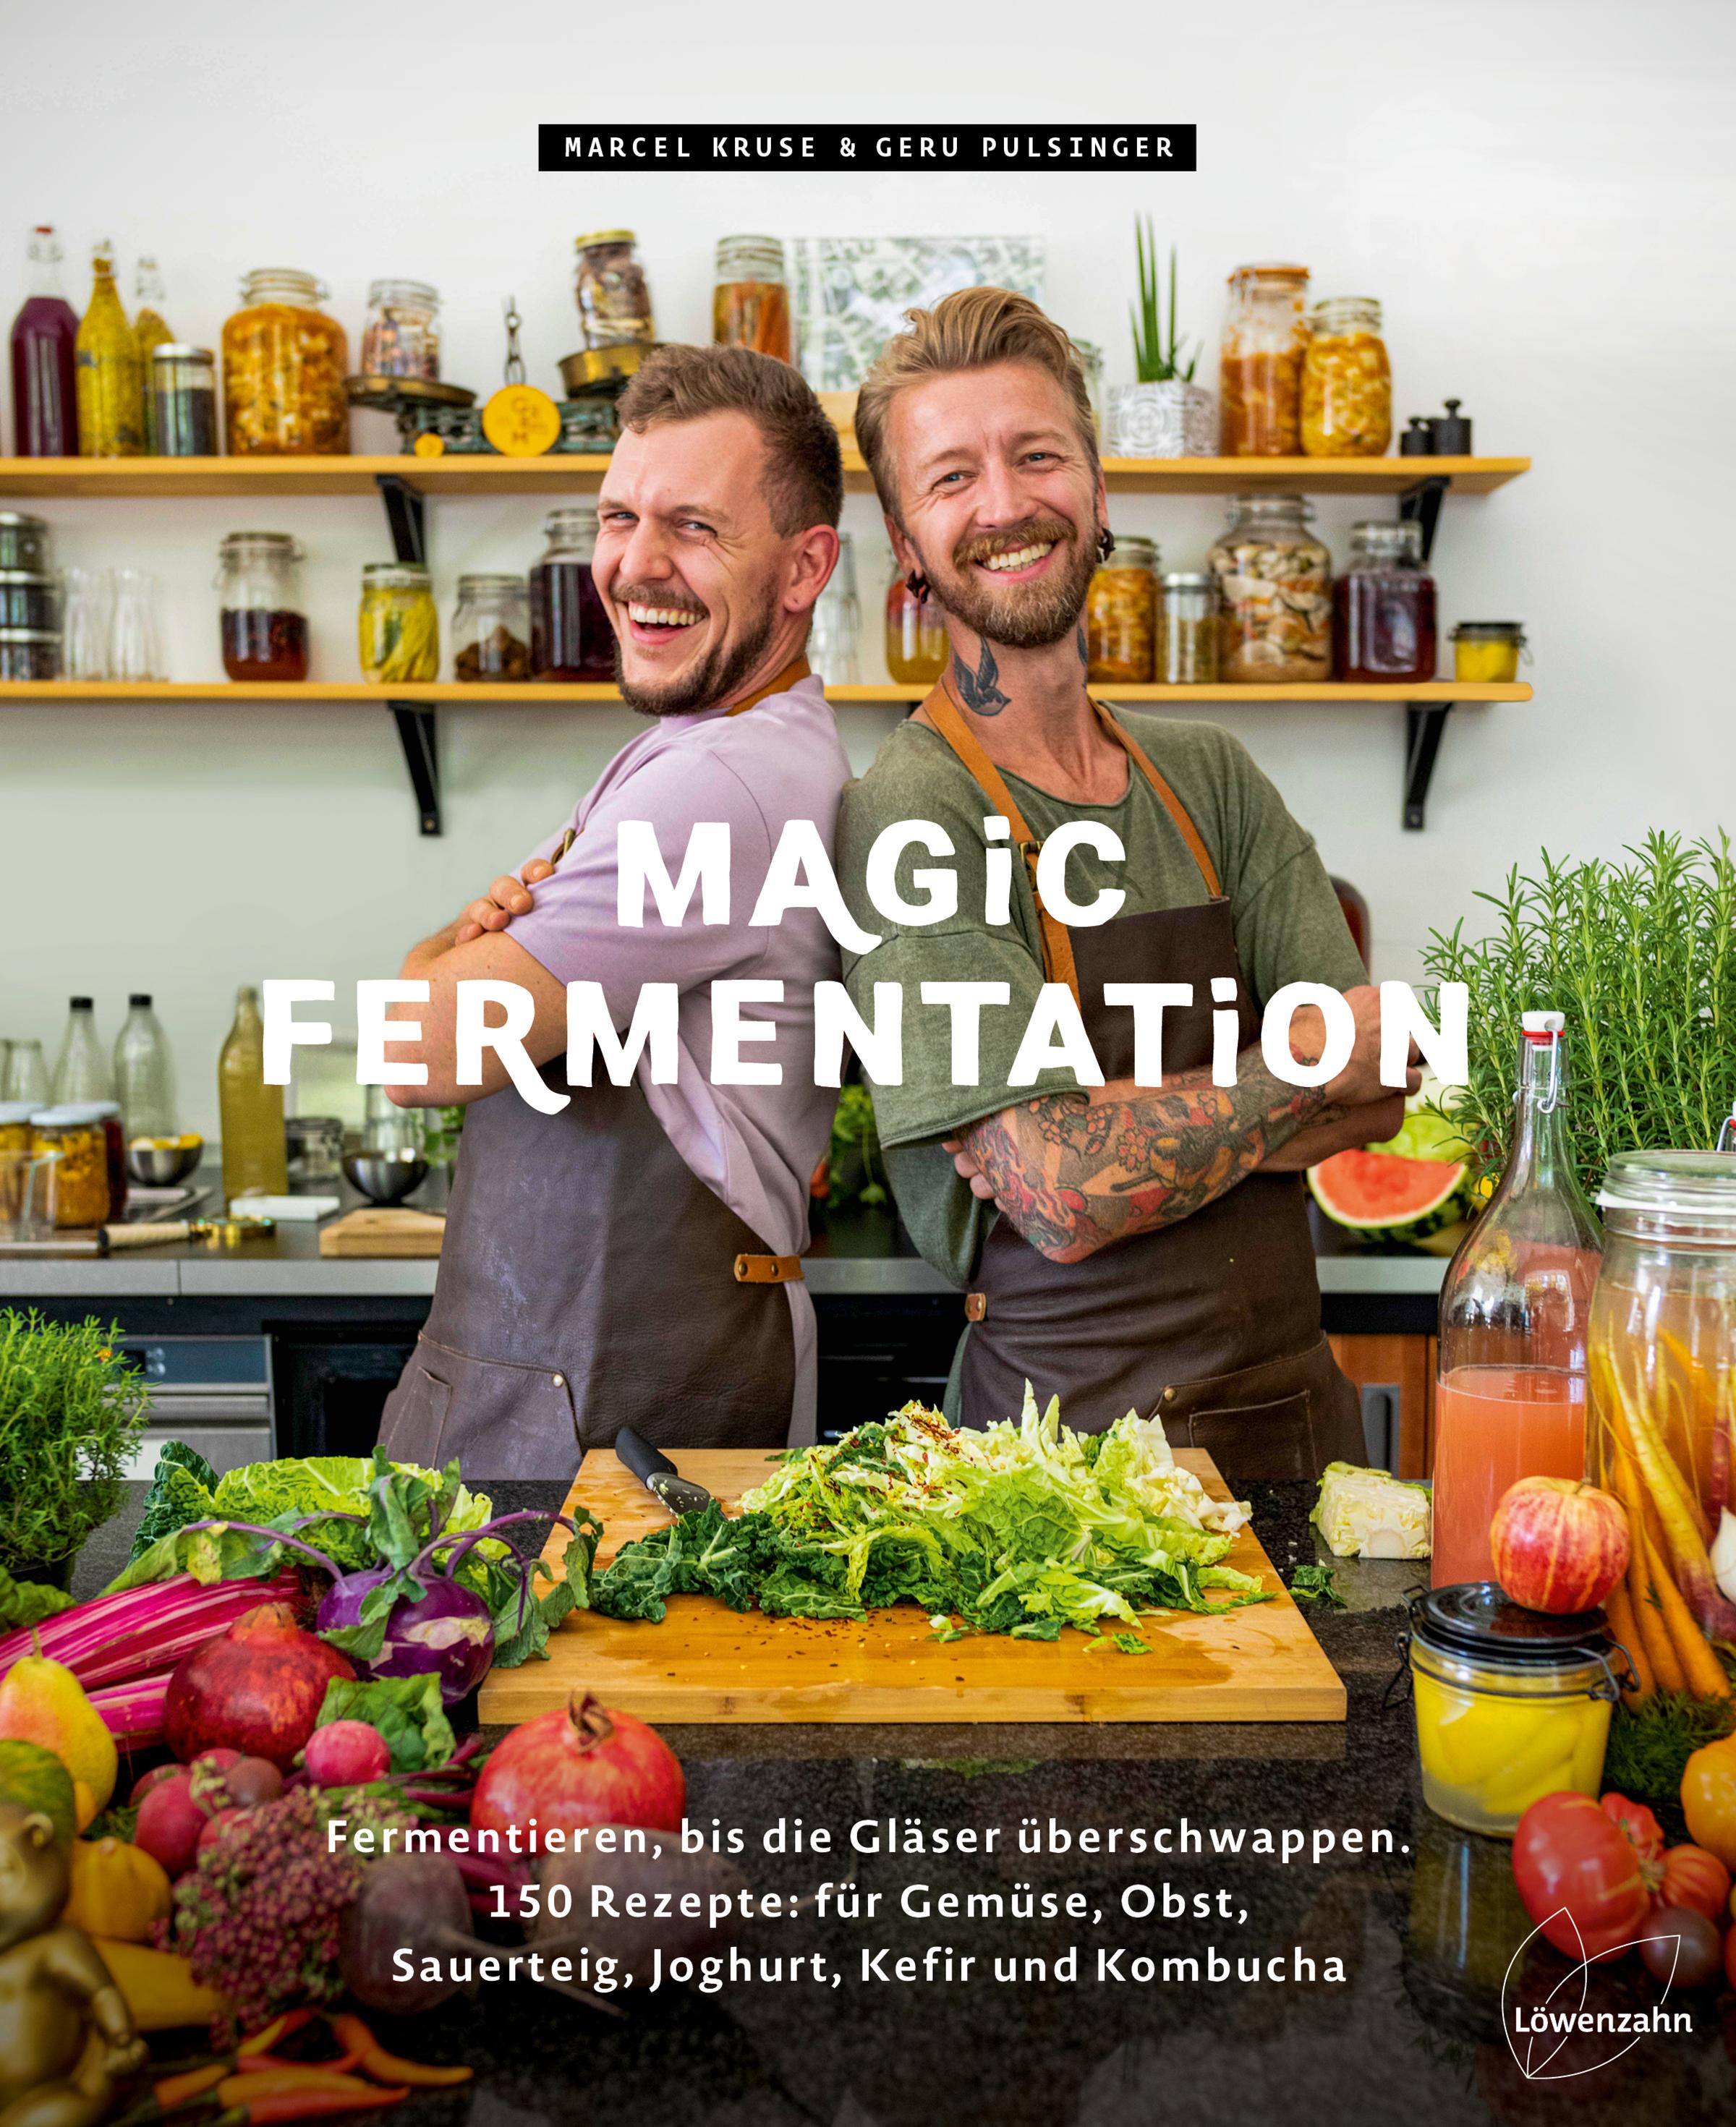 Magic Fermentation Fermentieren, bis die Gläser überschwappen. 150 Rezepte: für Gemüse, Obst, Sauerteig, Joghurt, Kefir und Kombucha